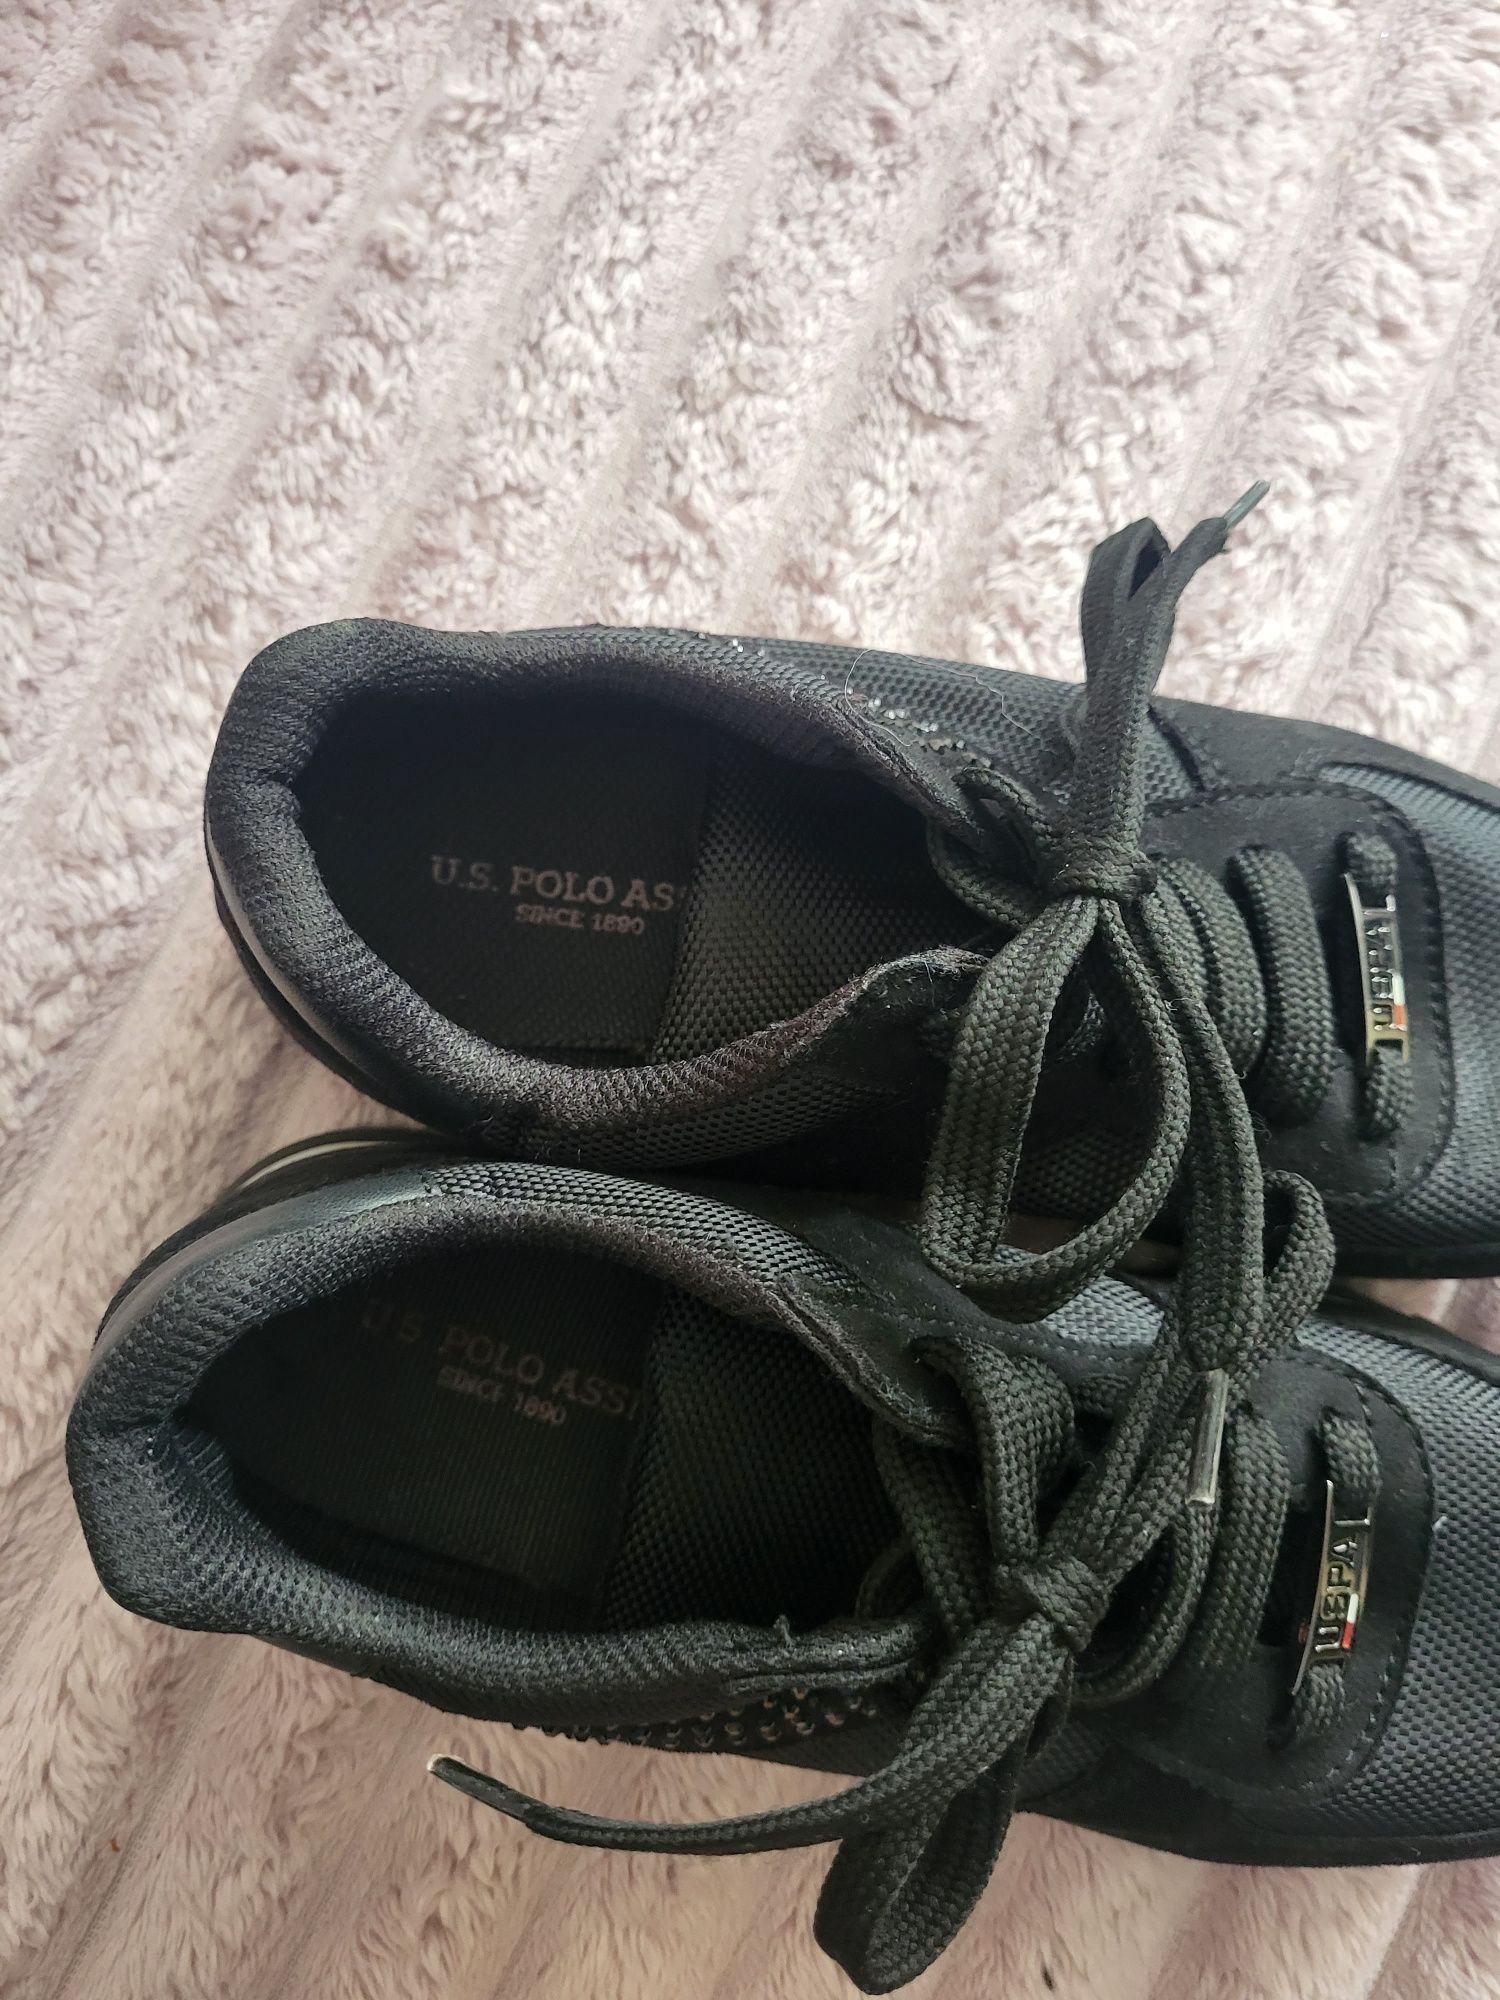 Adidasi, sneakers dama/copii US Pollo